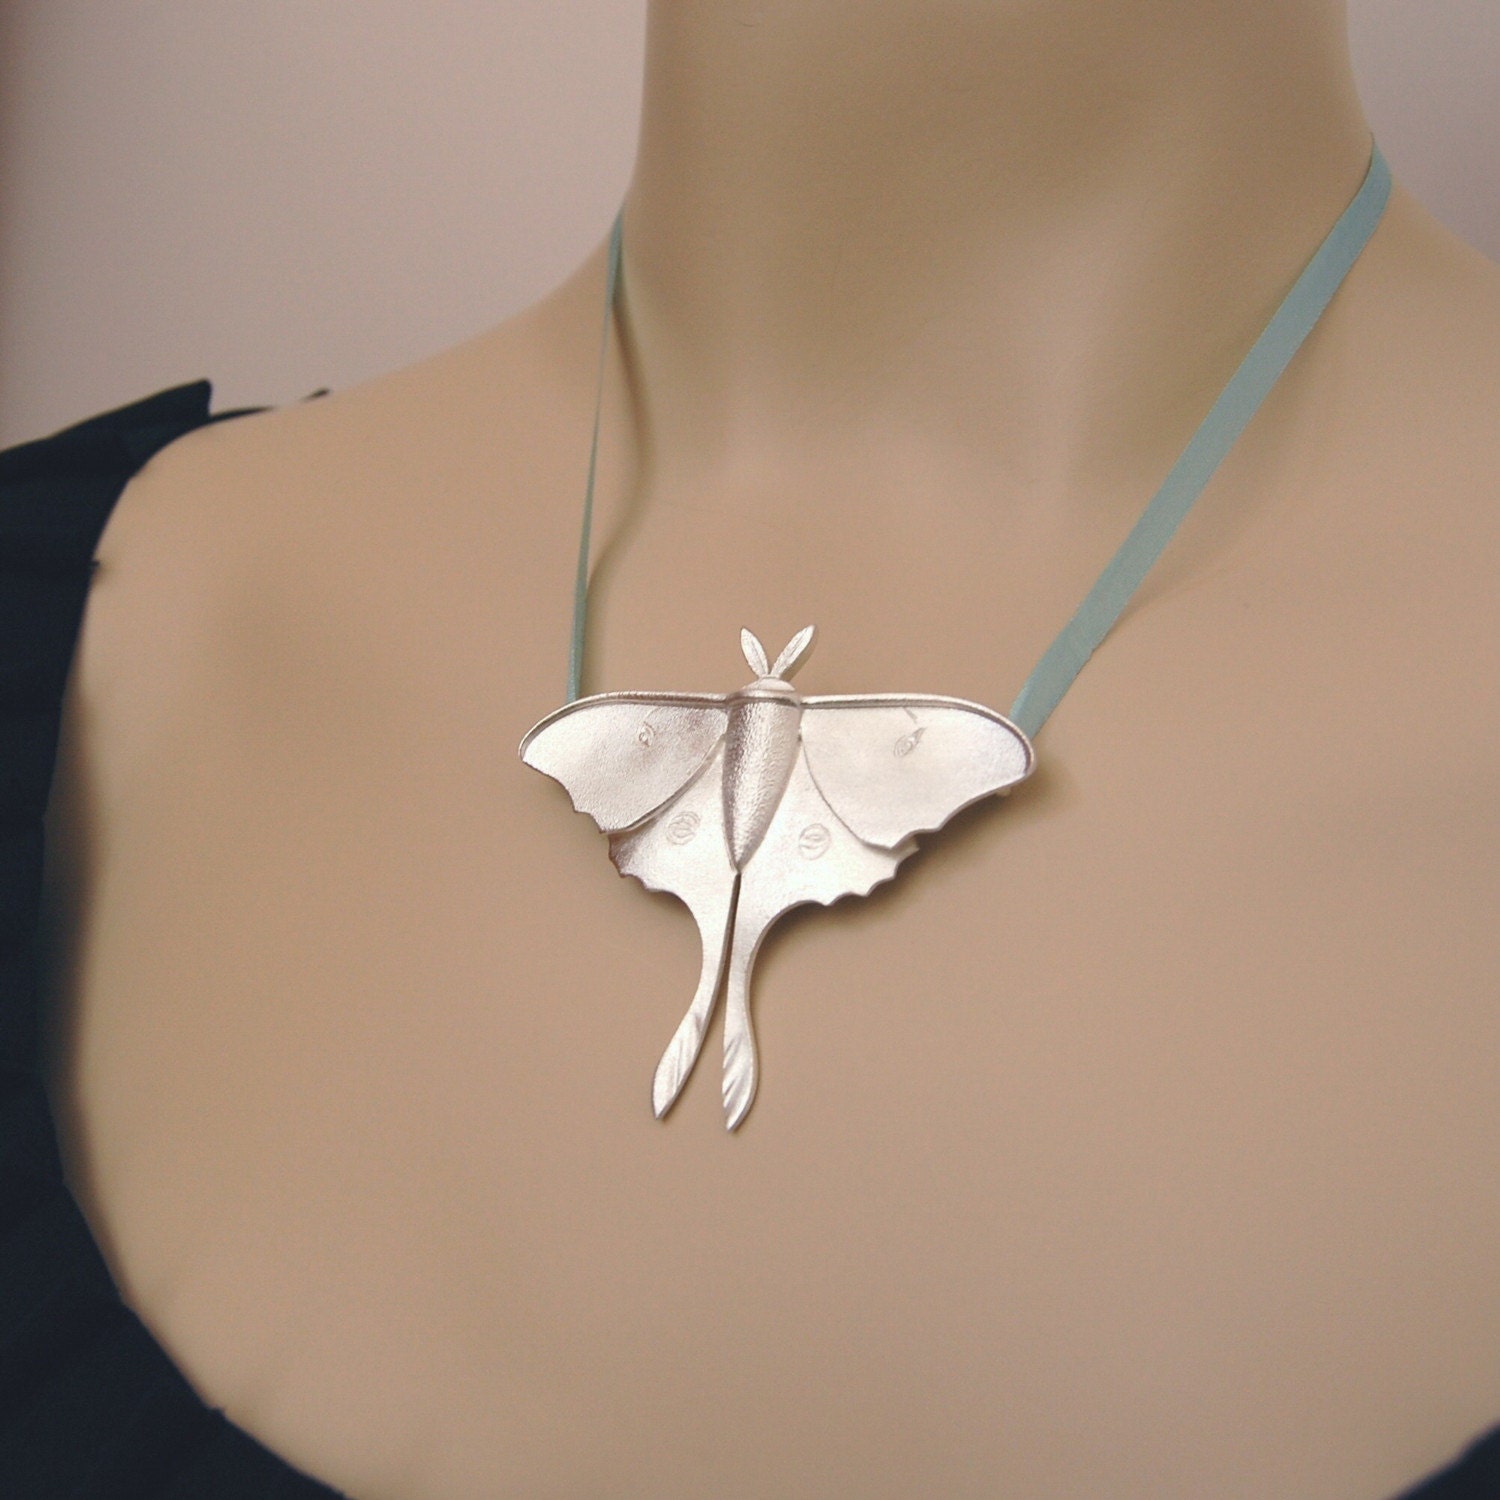 Luna Moth Jewelry Pendant in fine silver